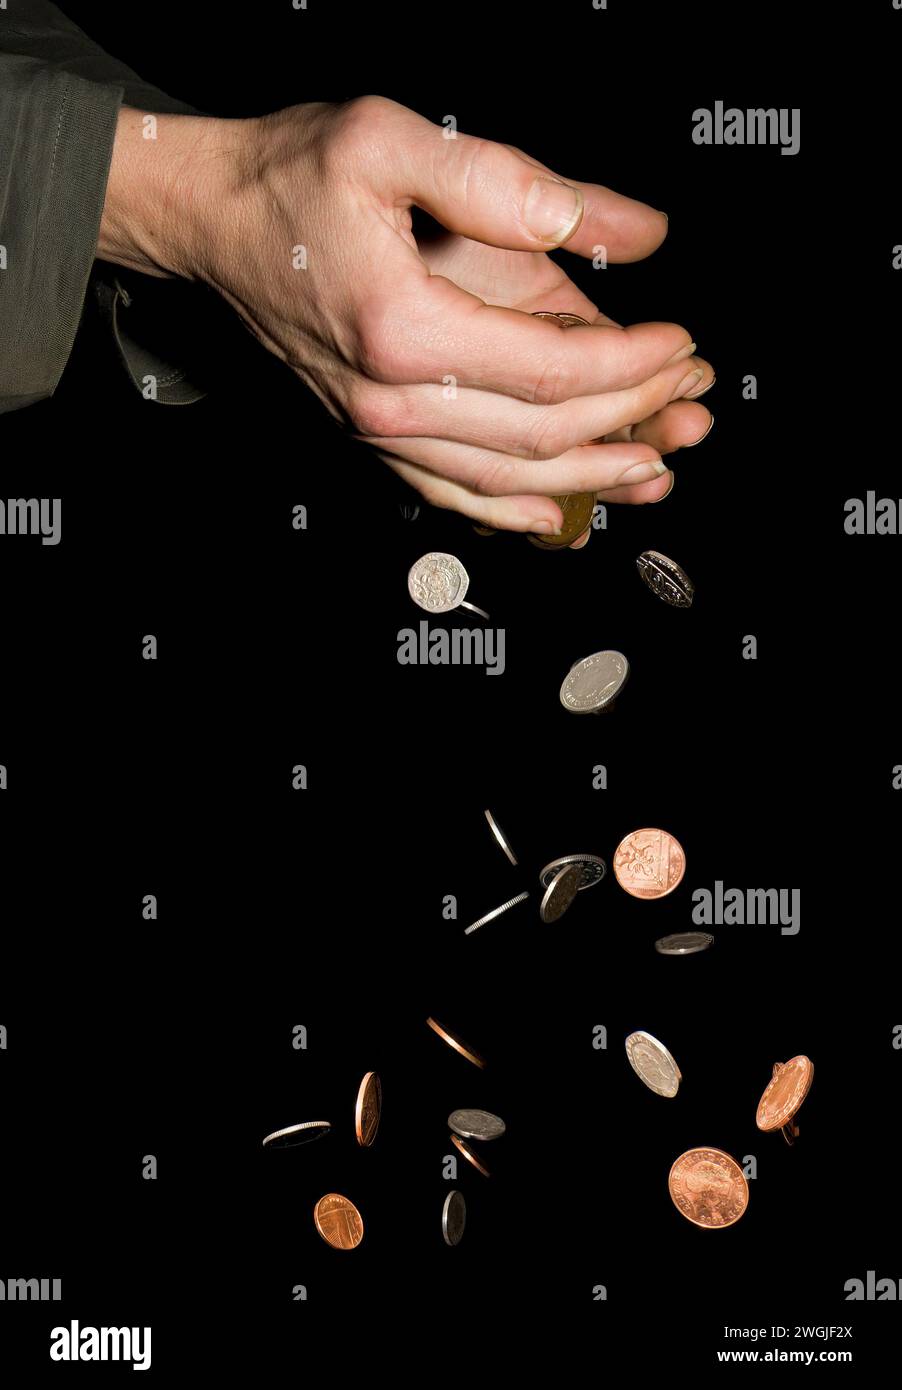 Hombre caucásico (42 años) manos con dinero cayendo que representan el concepto de «dinero deslizándose por las manos» o «demasiado dinero para retener» Foto de stock